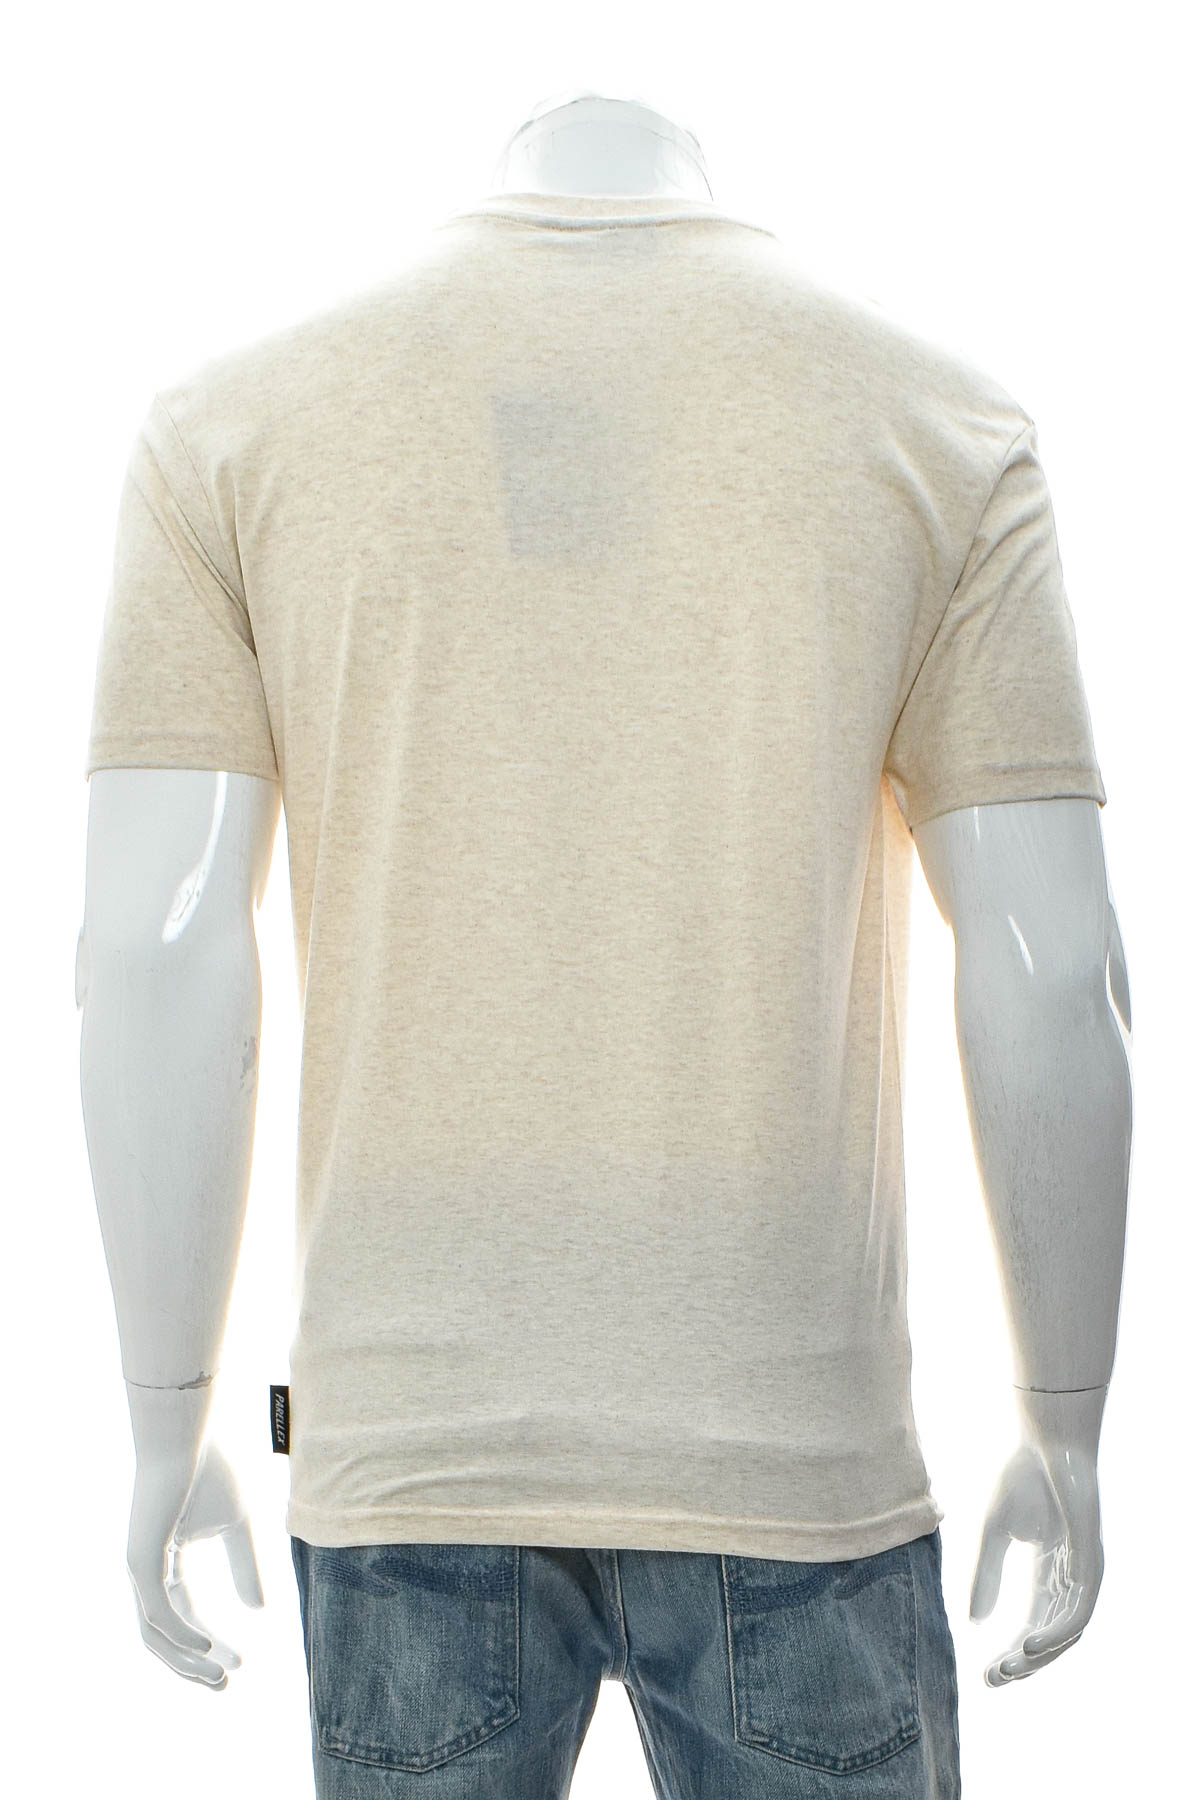 Men's T-shirt - PARELLEX - 1